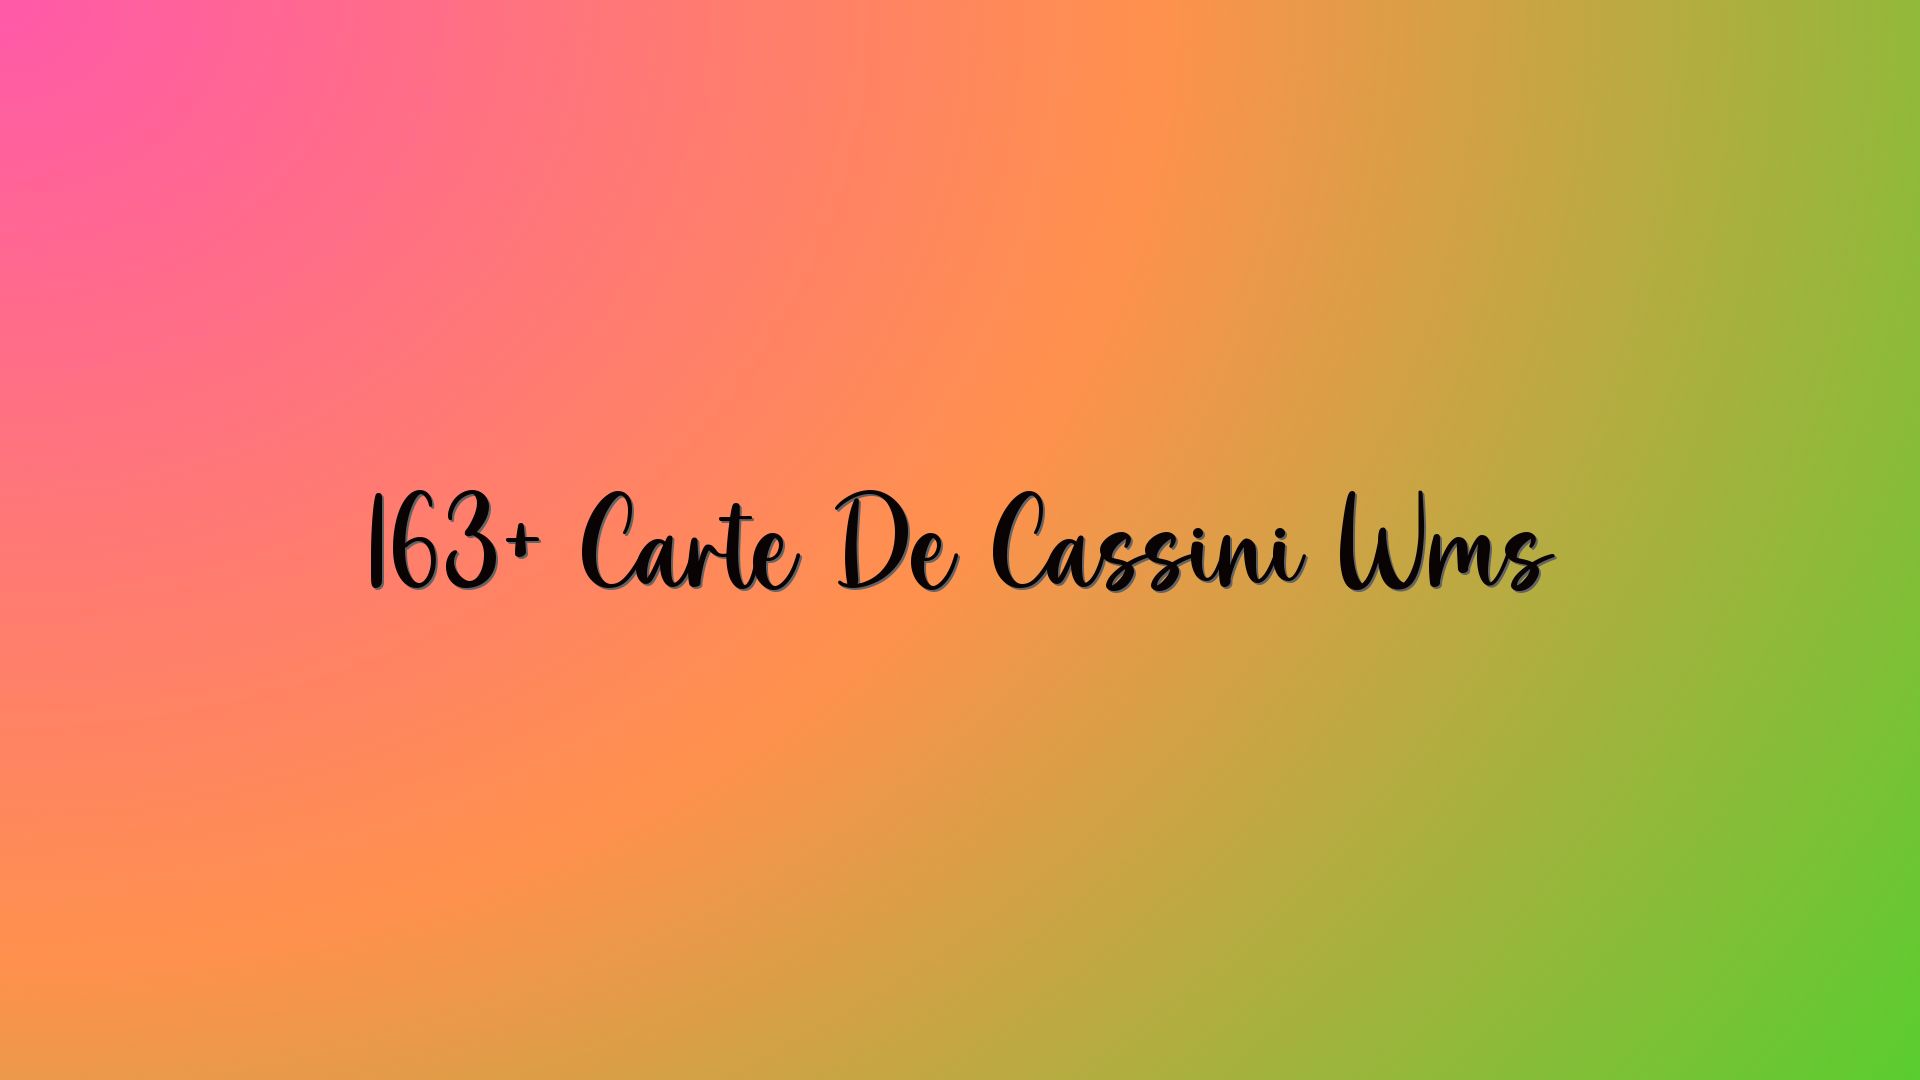 163+ Carte De Cassini Wms